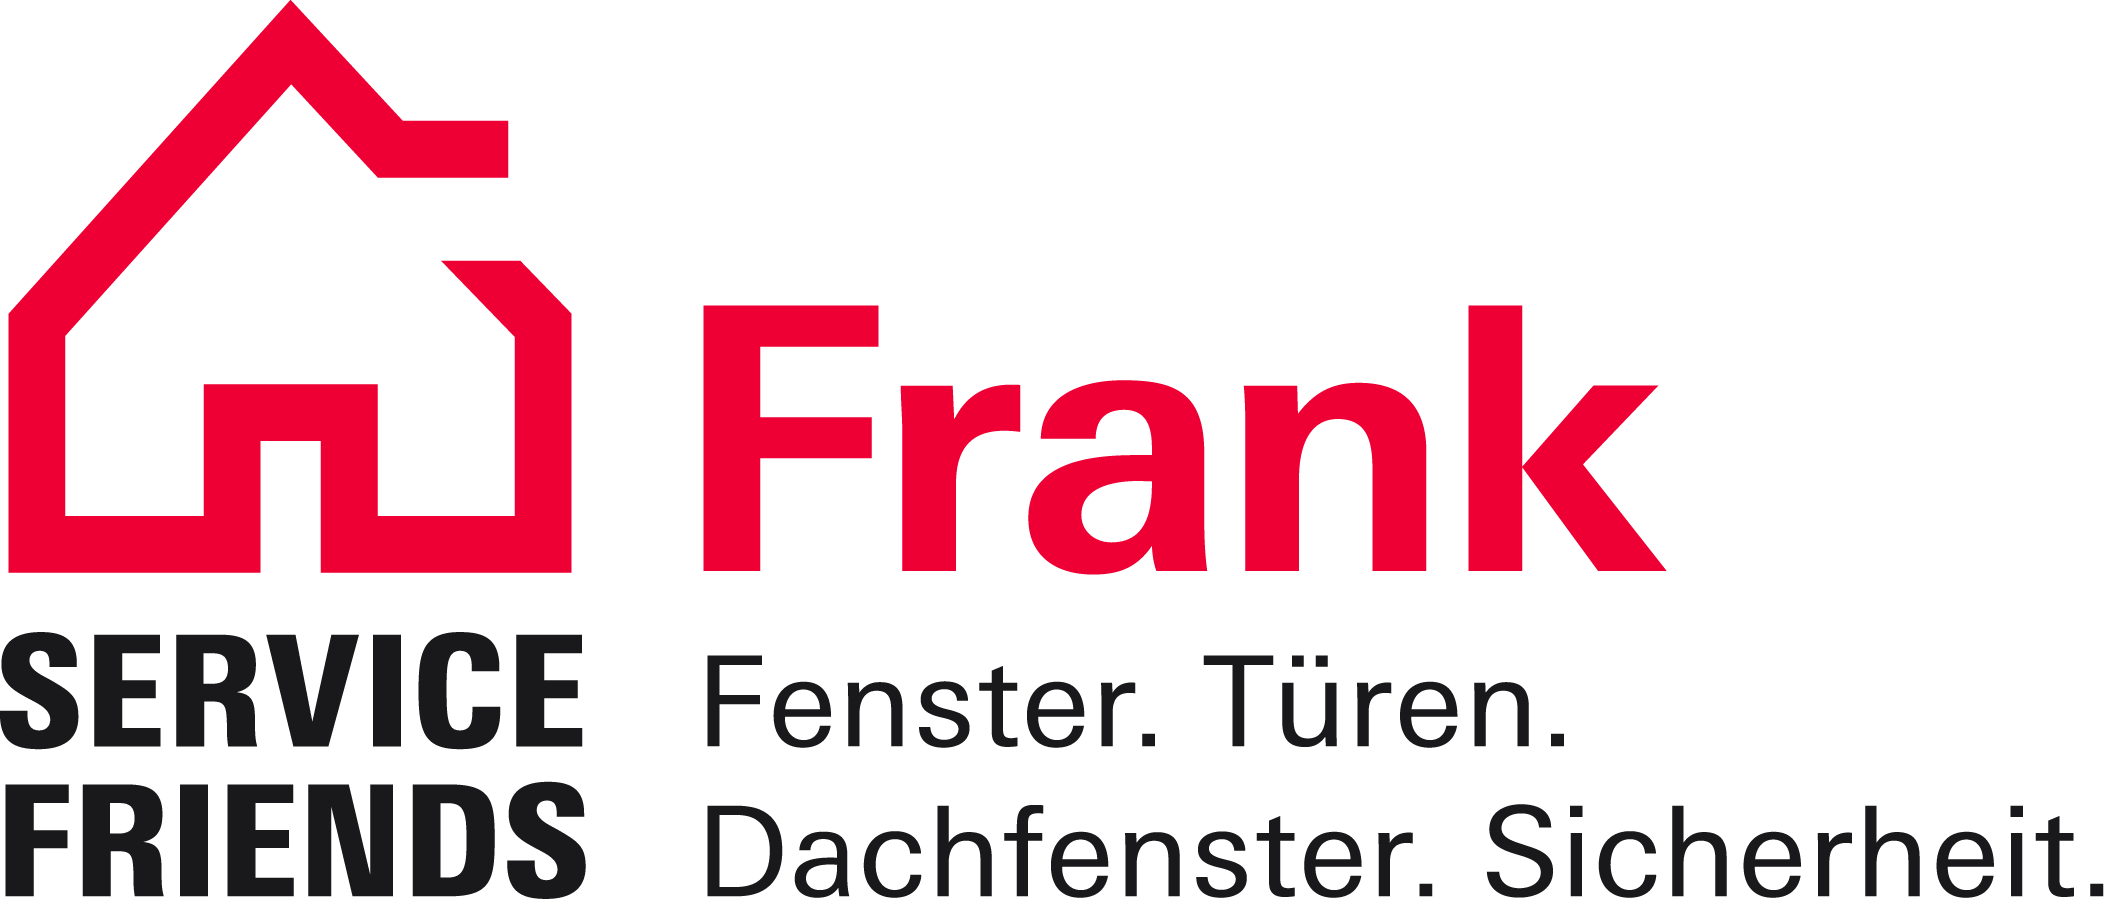 Frank SF logo